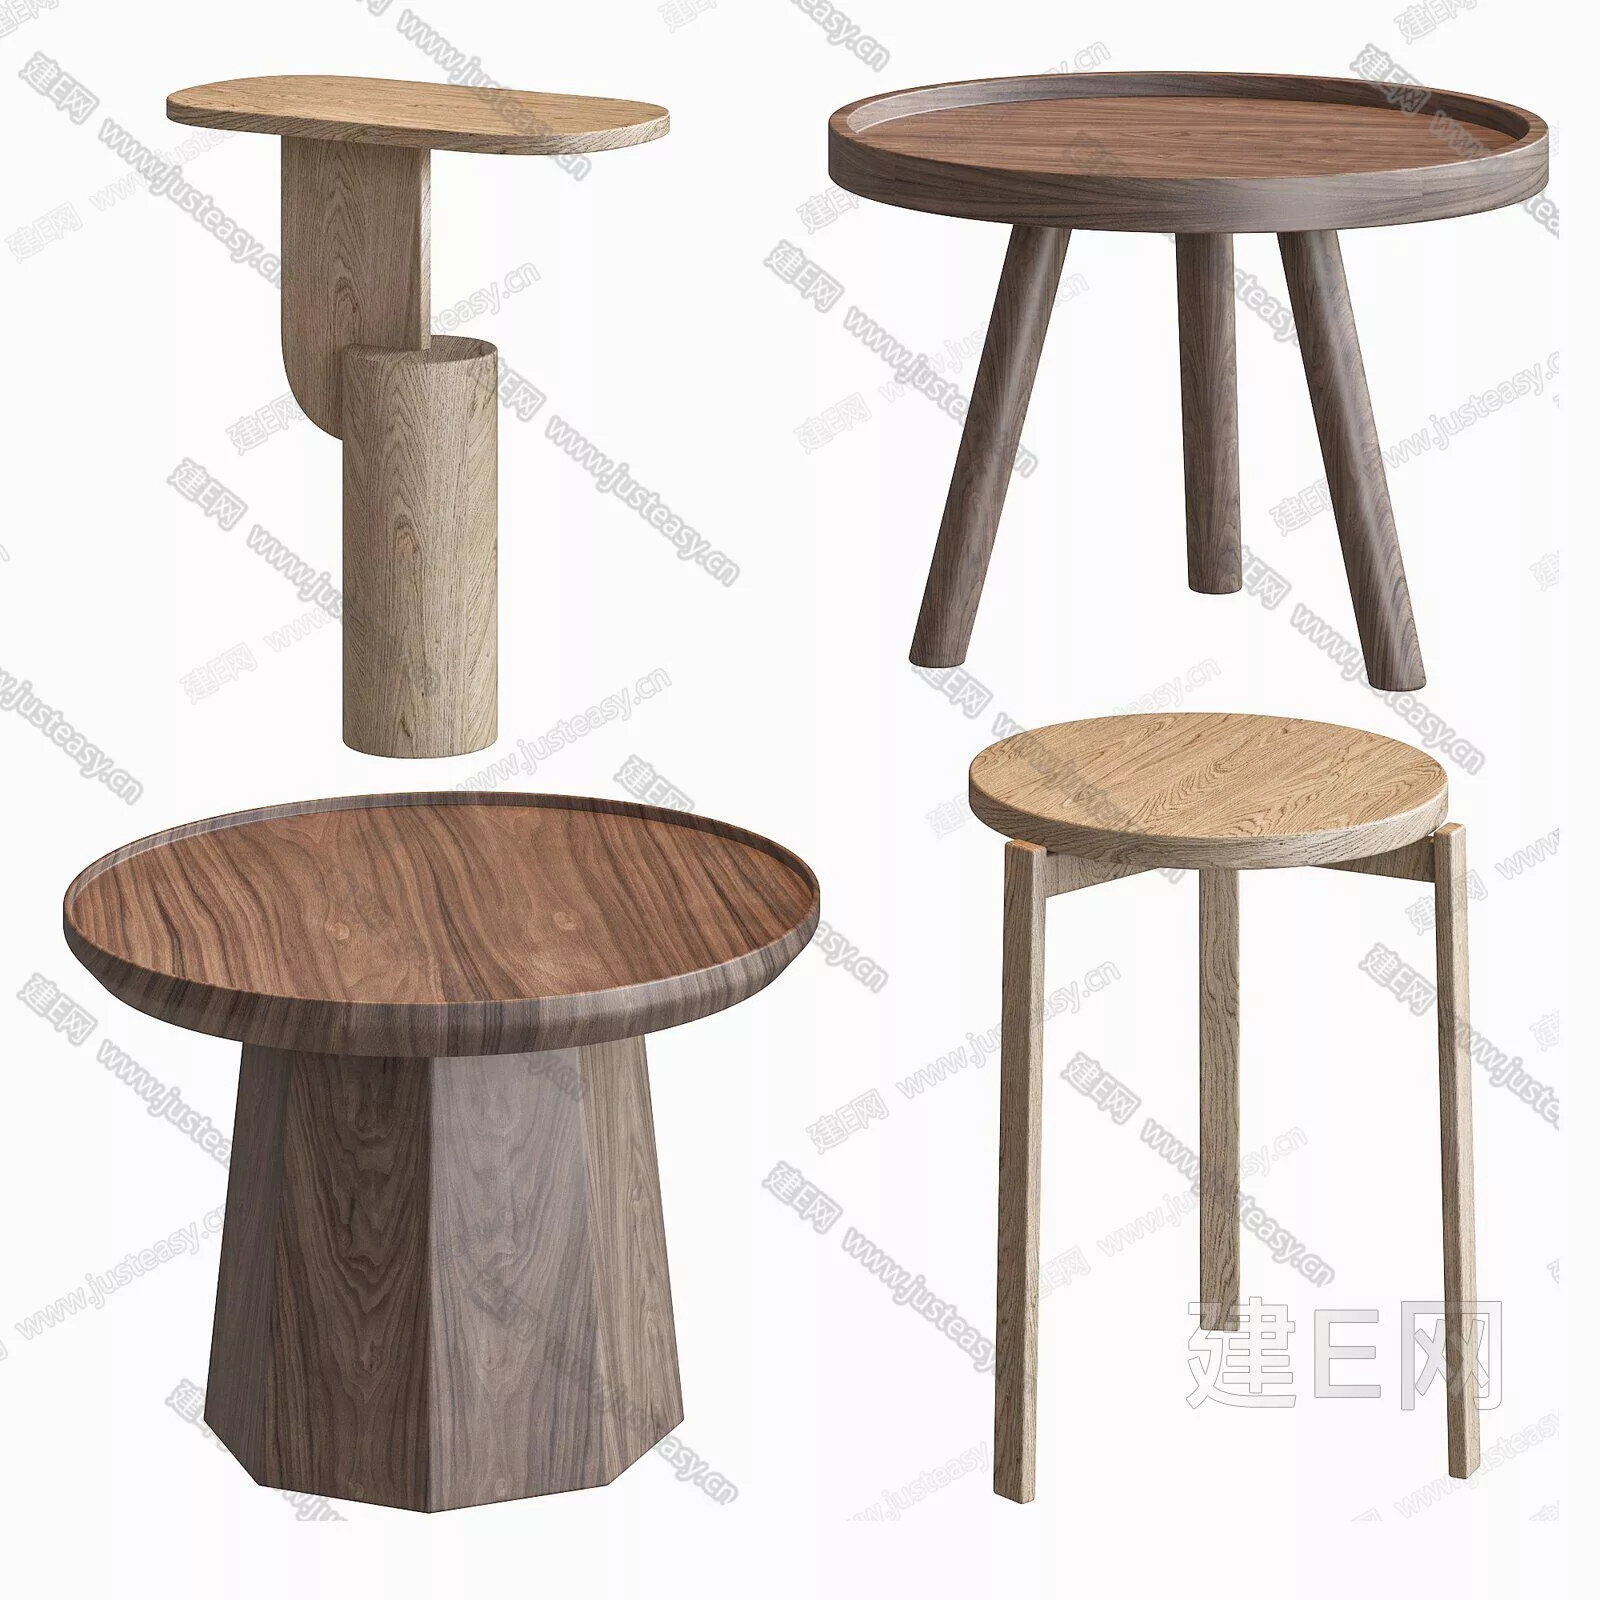 MODERN SIDE TABLE - SKETCHUP 3D MODEL - ENSCAPE - 101861789